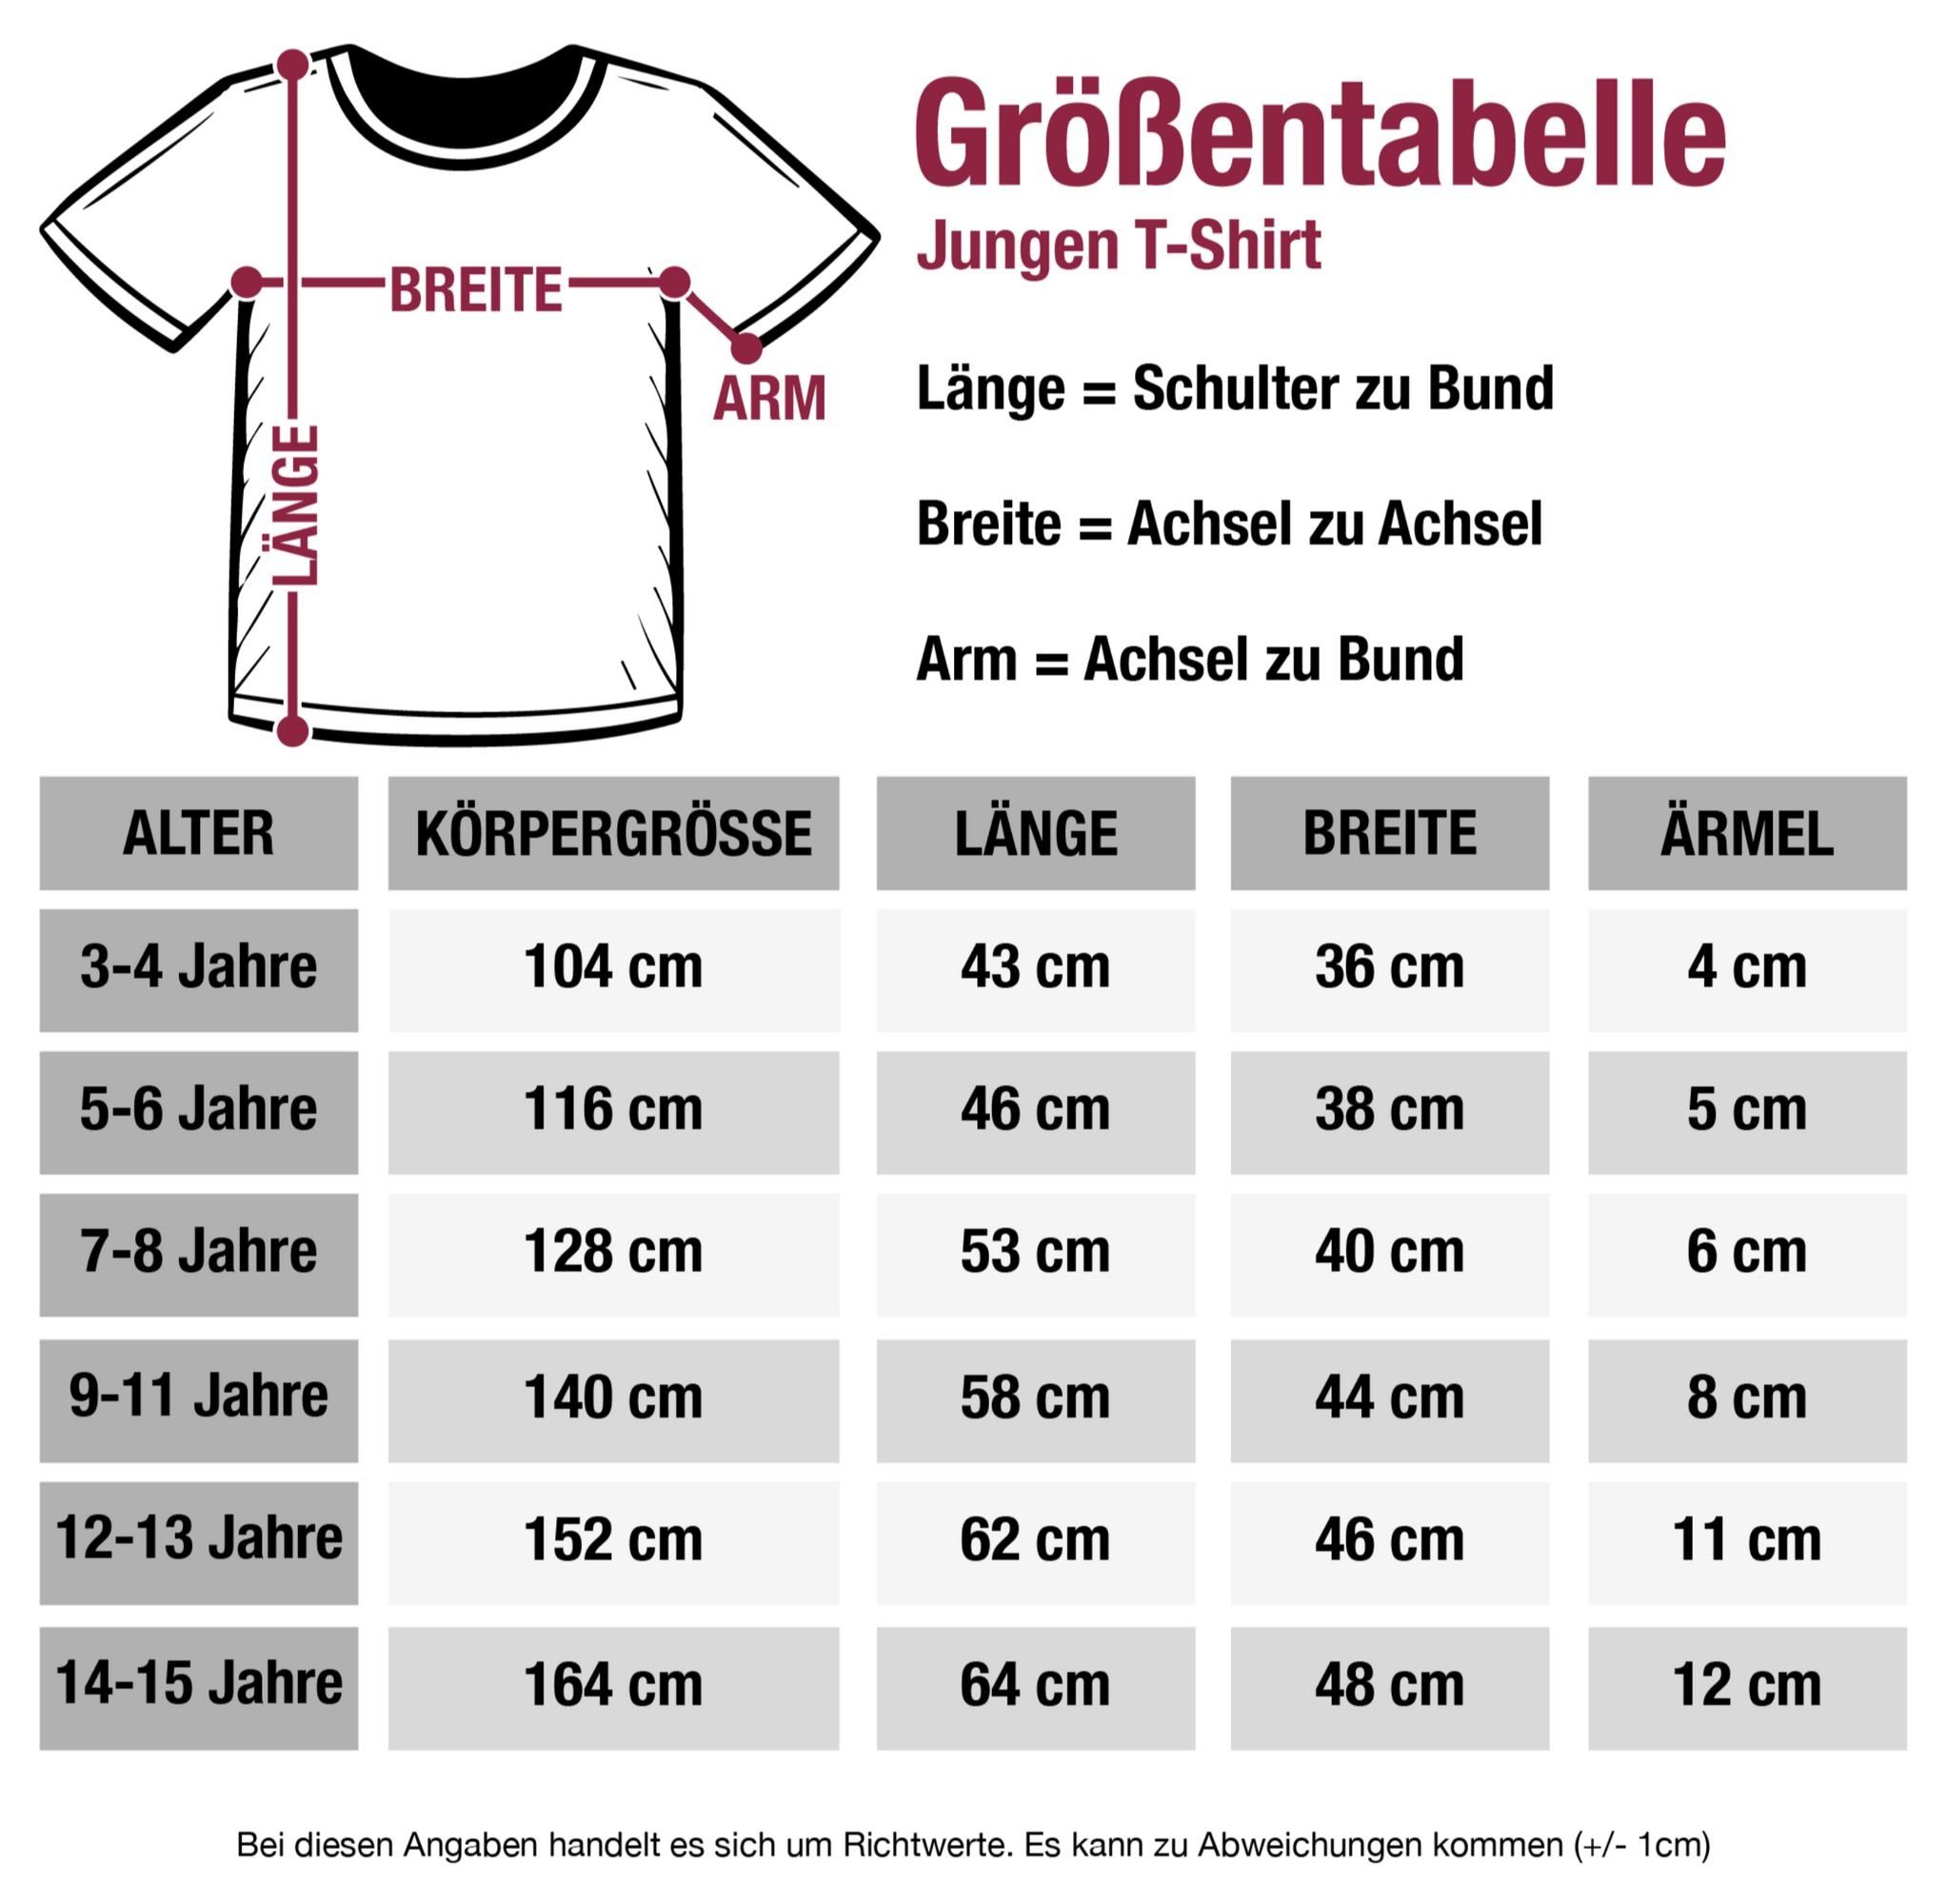 Shirtracer Dunkelblau Schulhof T-Shirt Geschenke Meliert Schulanfang Fußball Bye Junge Kindergarten Kick Einschulung Bye 3